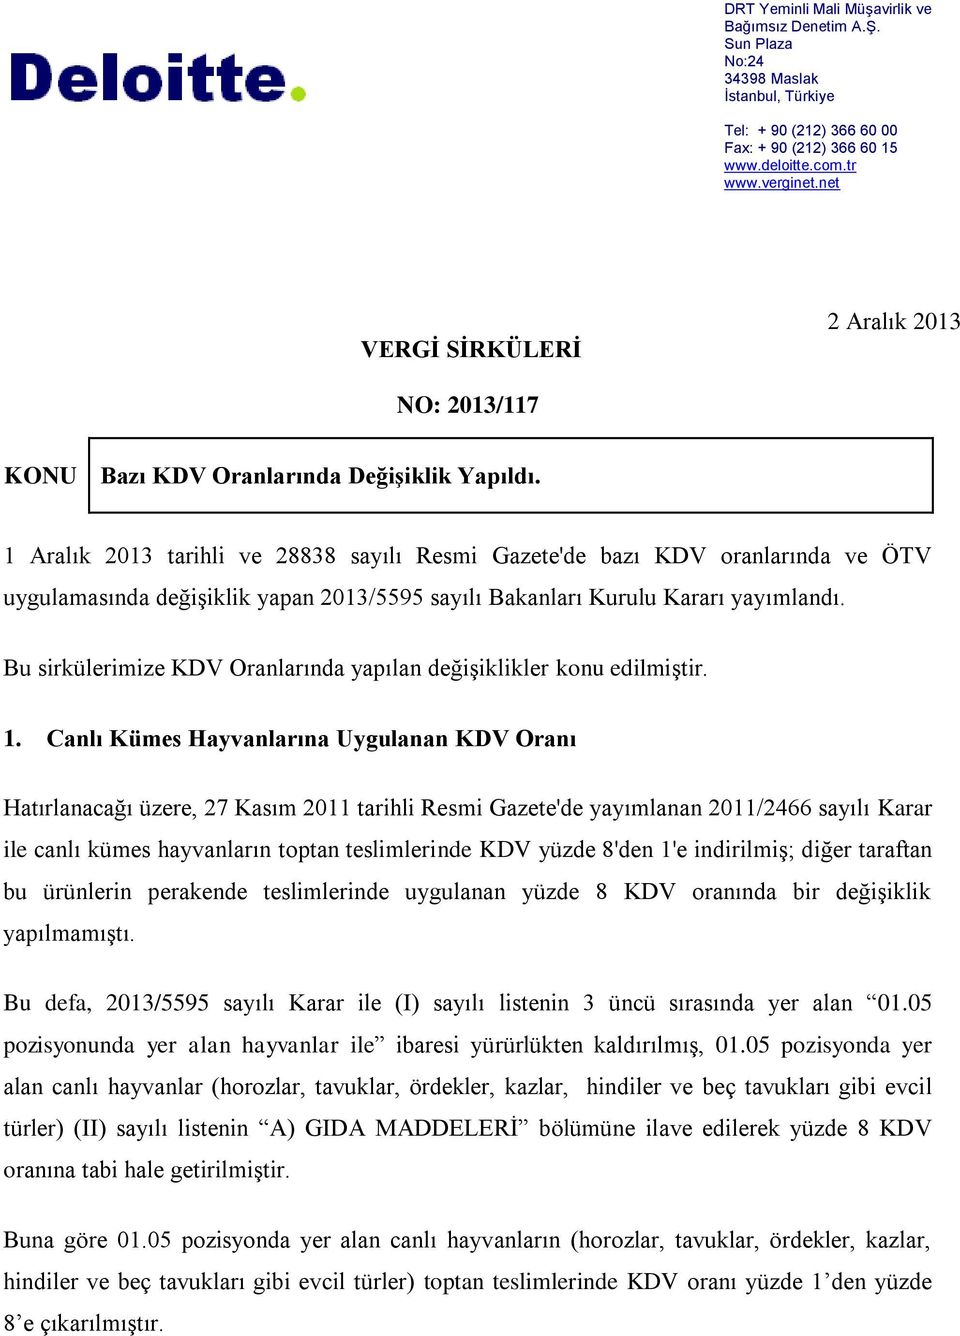 1 Aralık 2013 tarihli ve 28838 sayılı Resmi Gazete'de bazı KDV oranlarında ve ÖTV uygulamasında değişiklik yapan 2013/5595 sayılı Bakanları Kurulu Kararı yayımlandı.